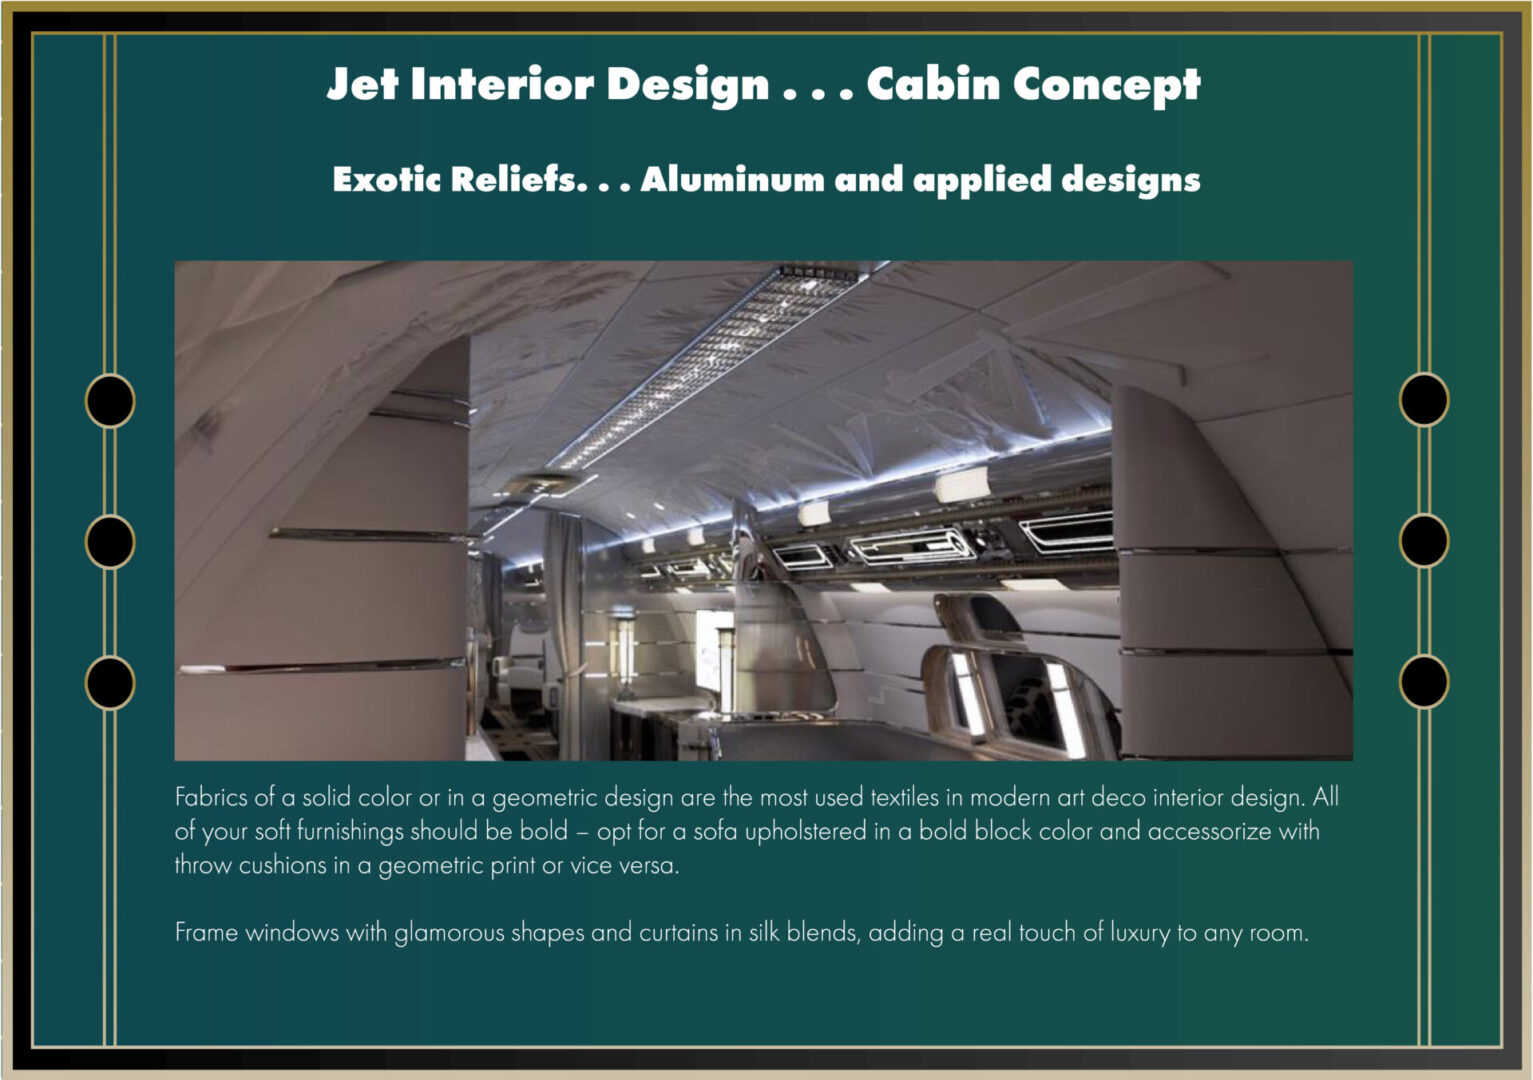 Jet Interior Design Exotic Reliefs in Aluminum